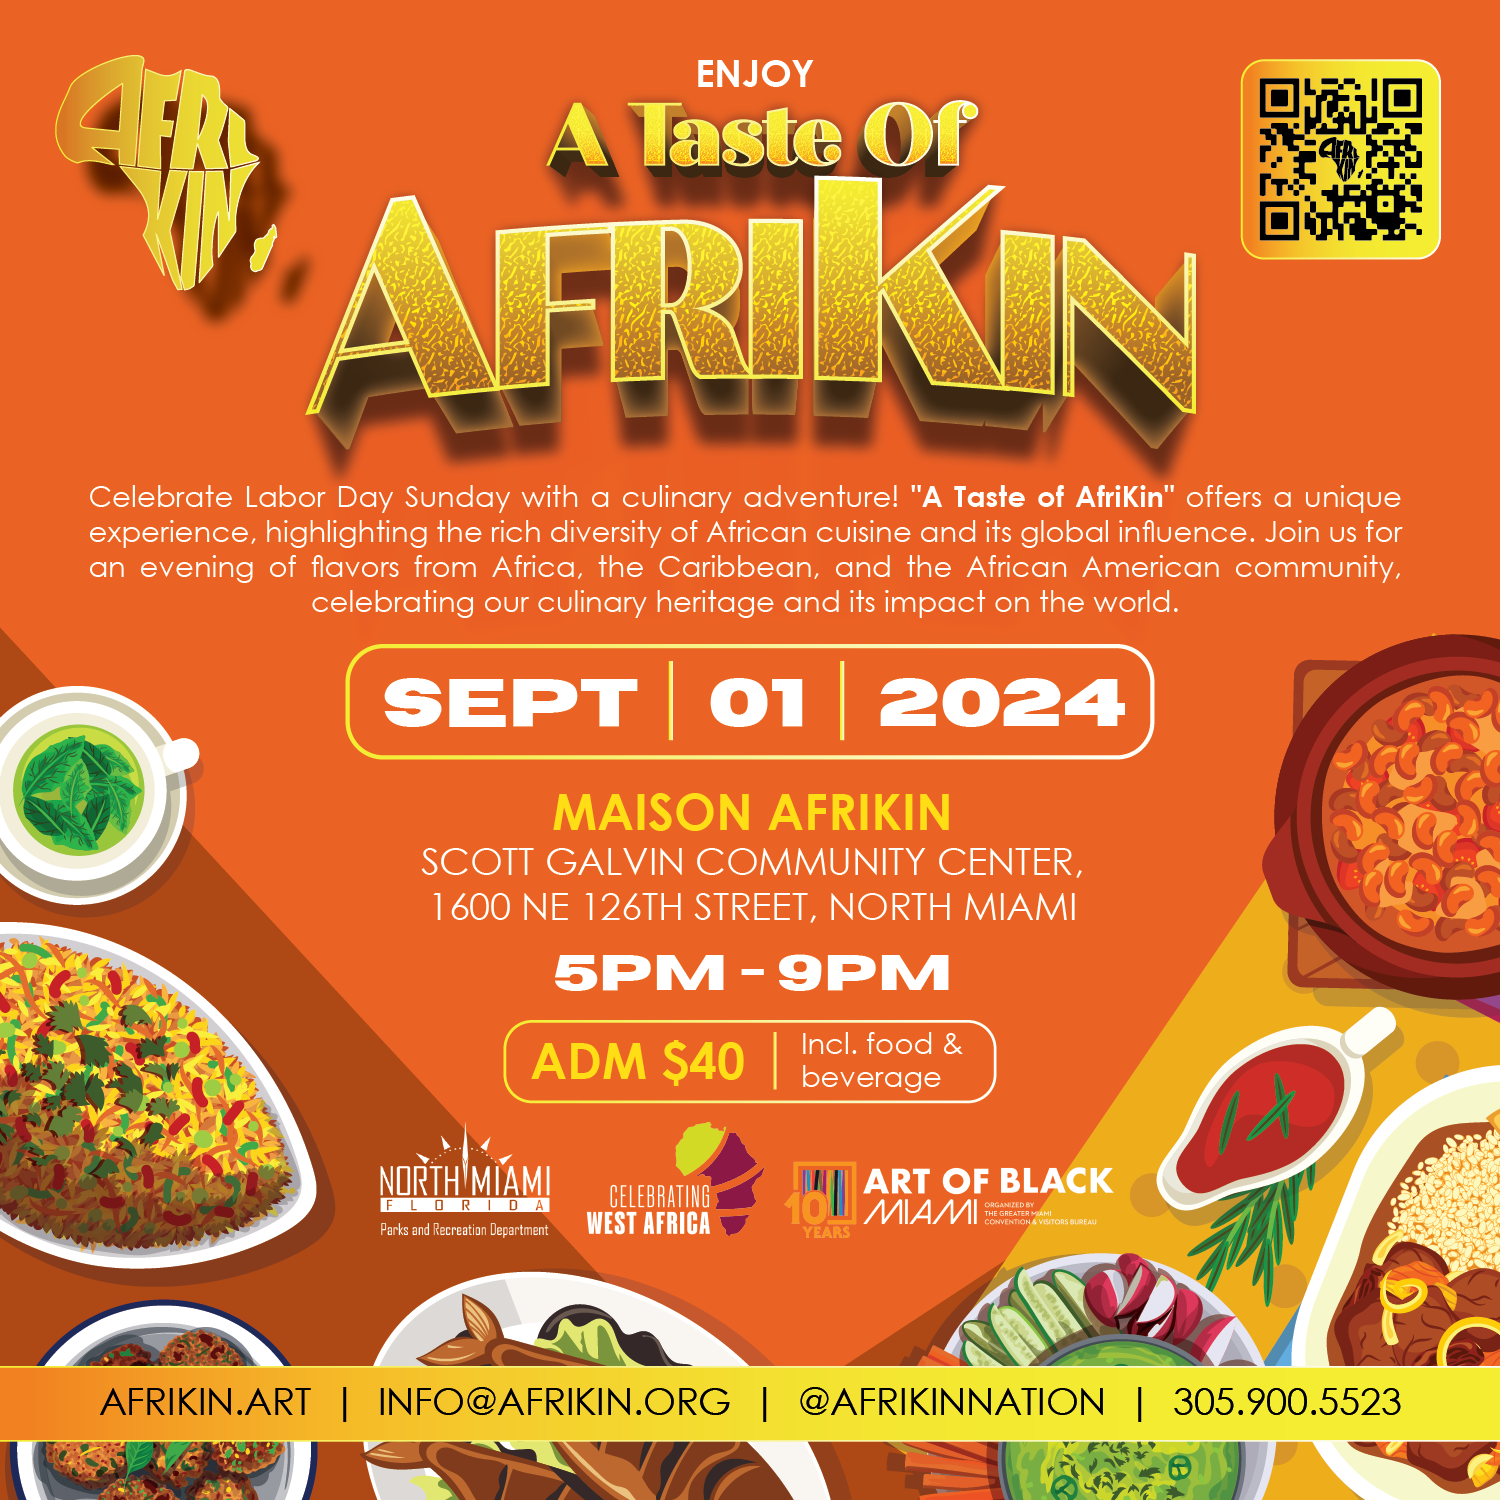 A taste of AfriKin